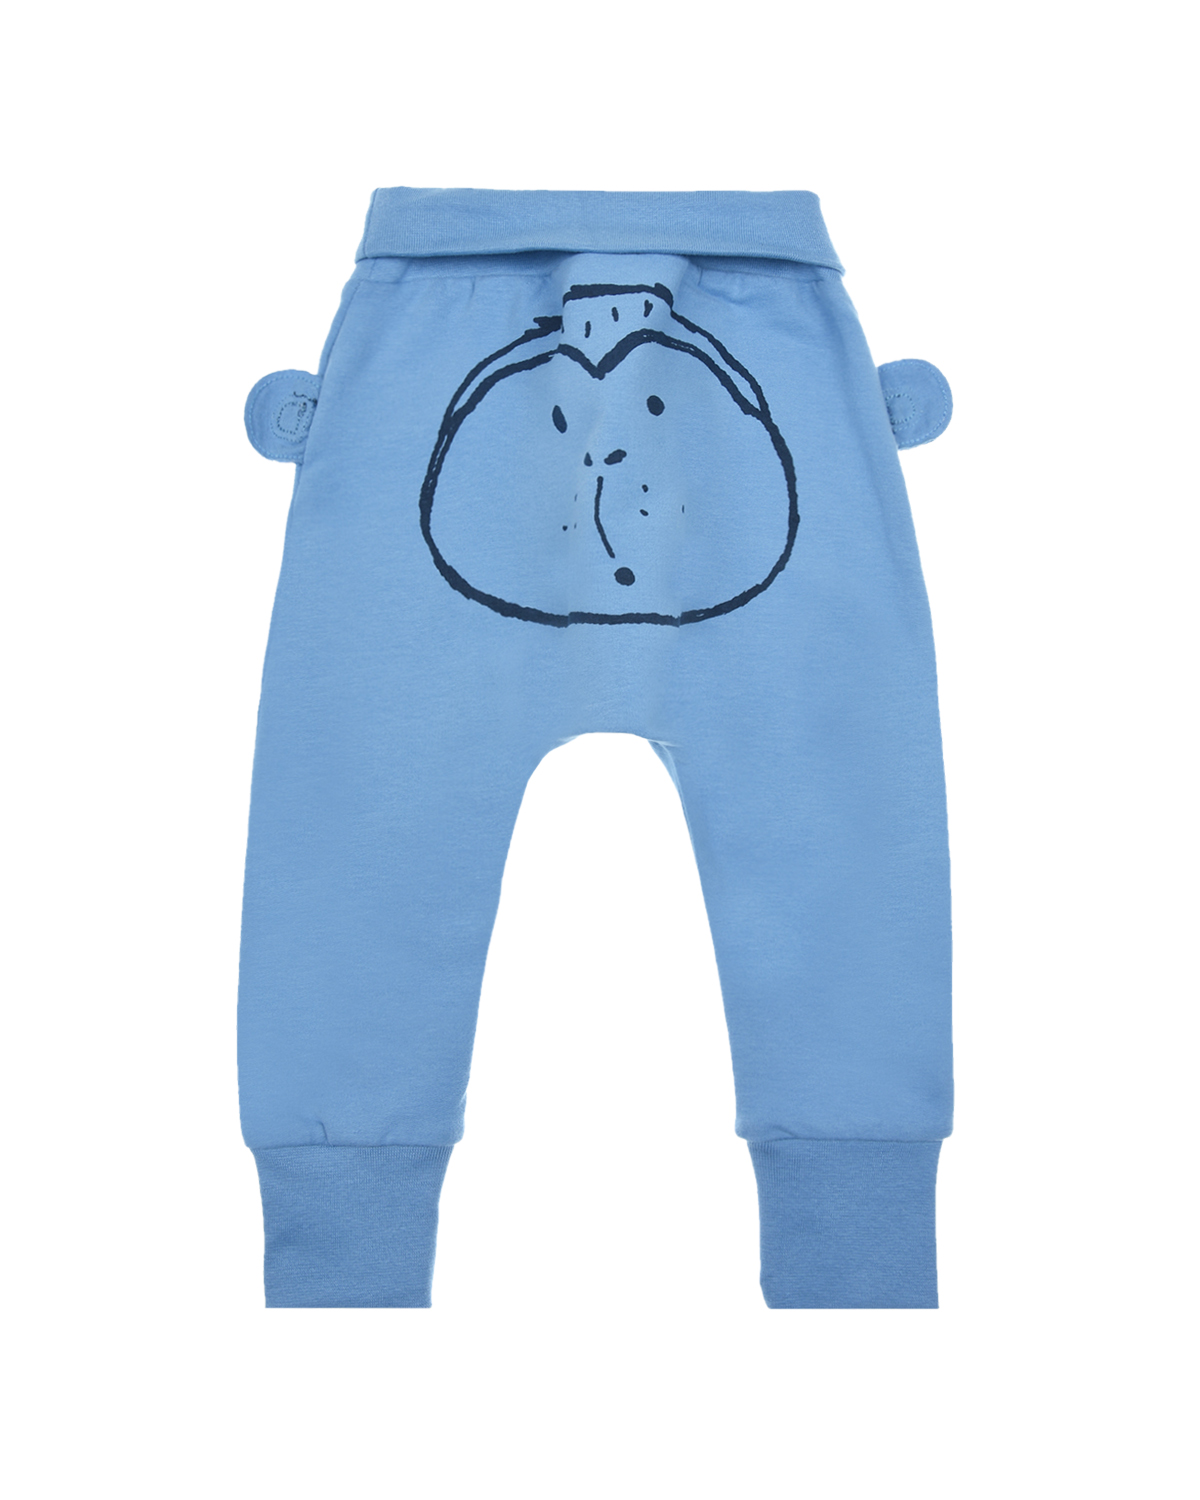 Синие спортивные брюки с принтом "обезьянка" Sanetta Kidswear детские, размер 68, цвет синий - фото 2